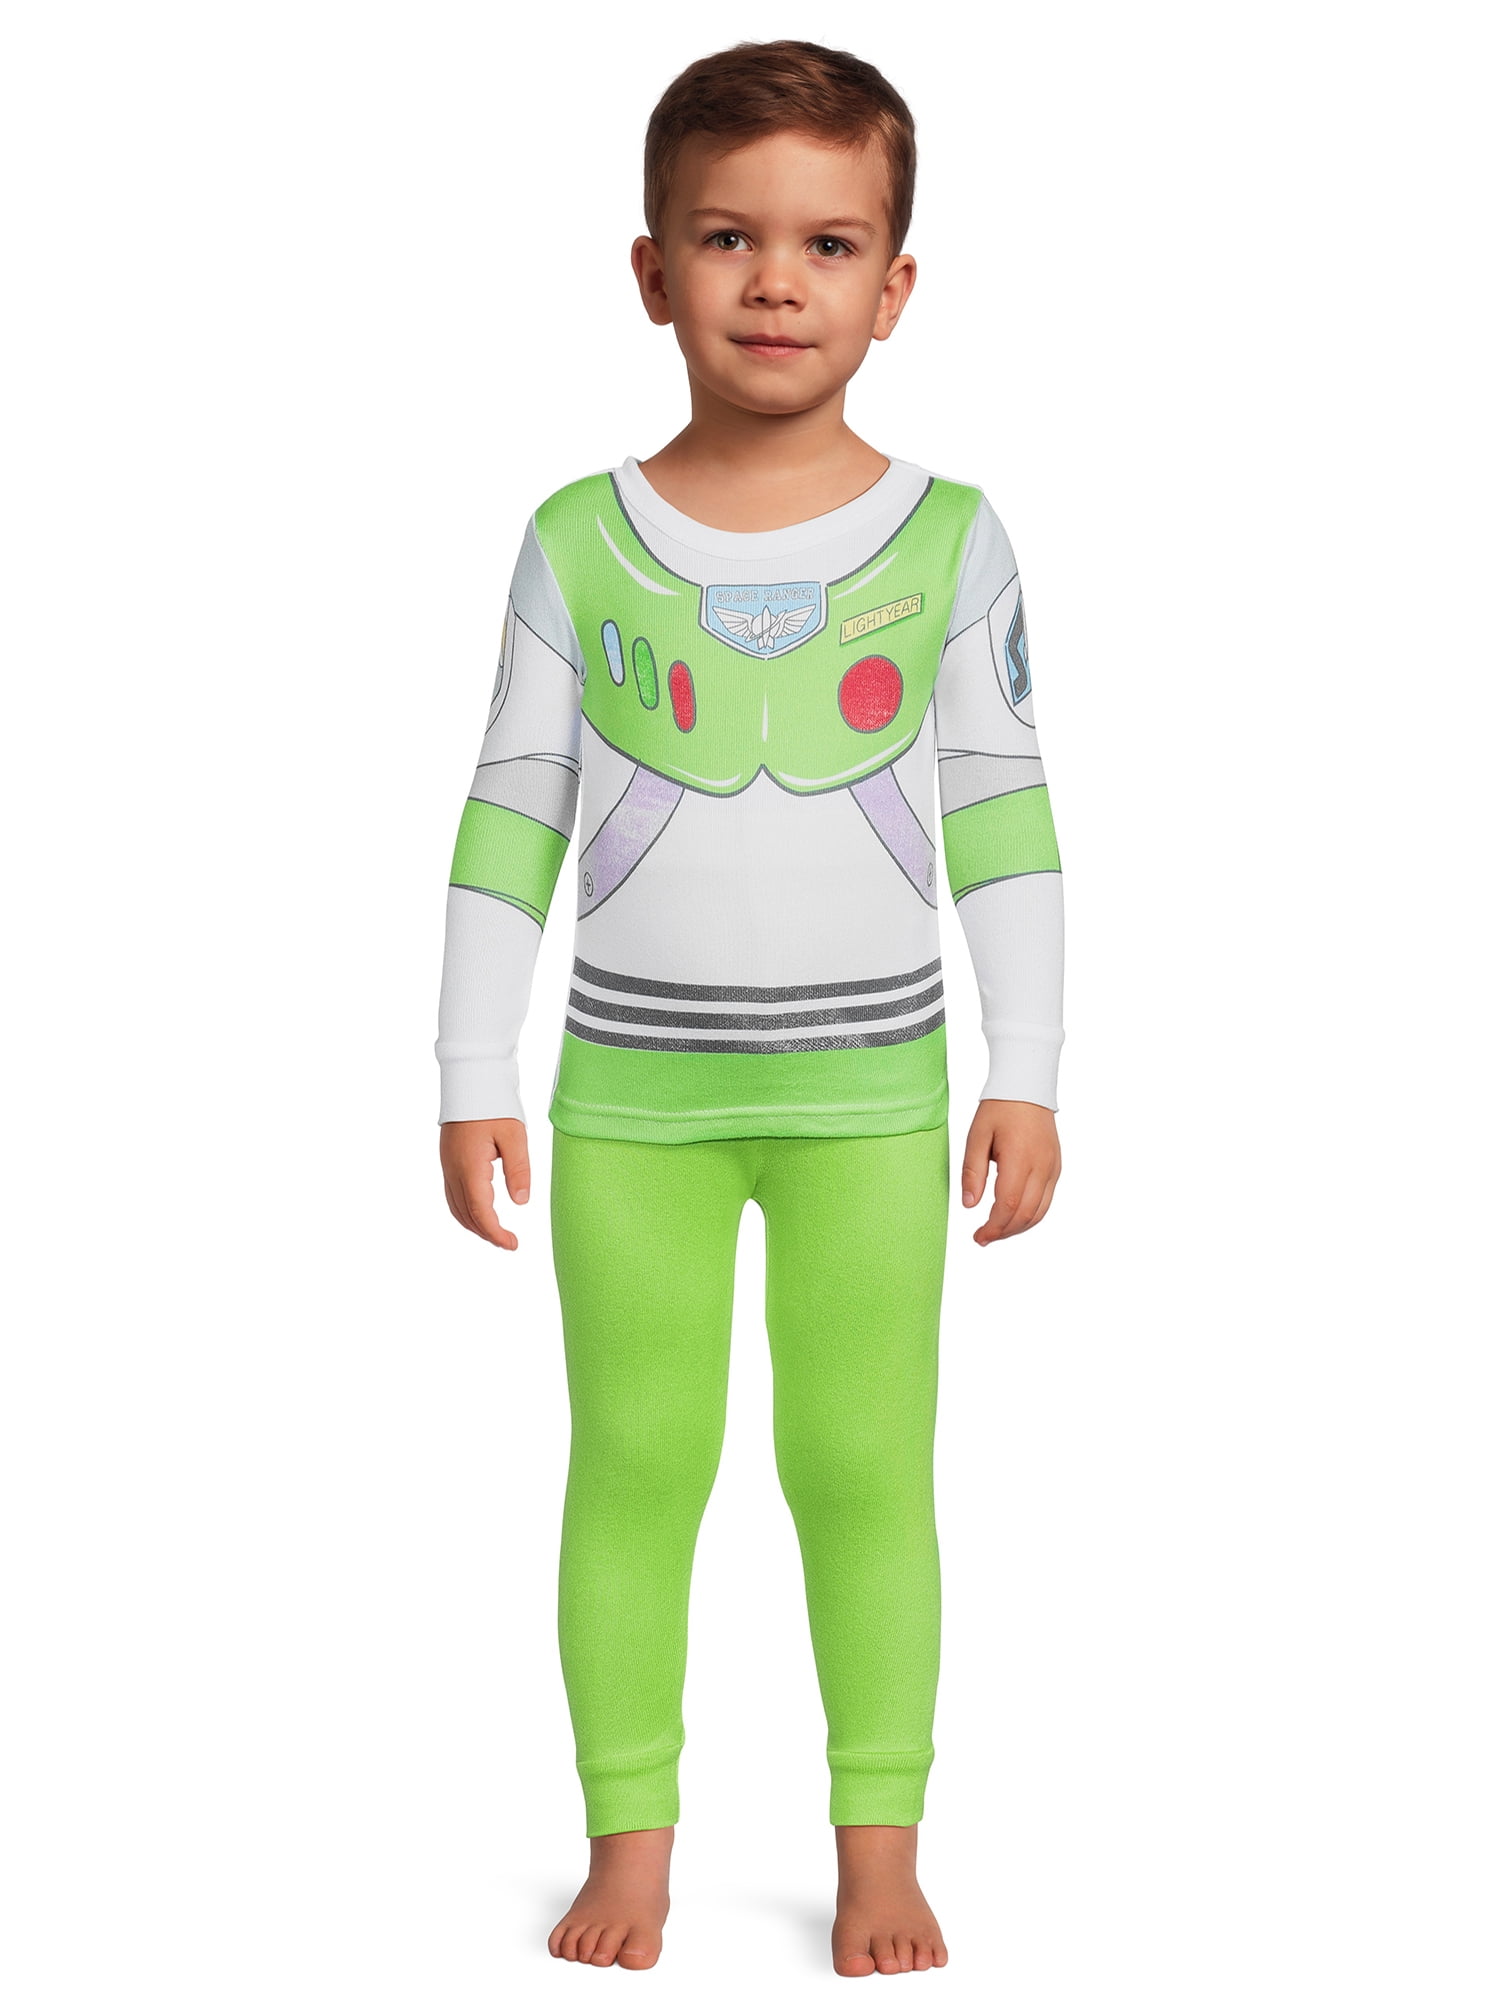 Toy Story's Buzz Lightyear Toddler Boy's Snug Fit Pajama Set, 2-Piece ...